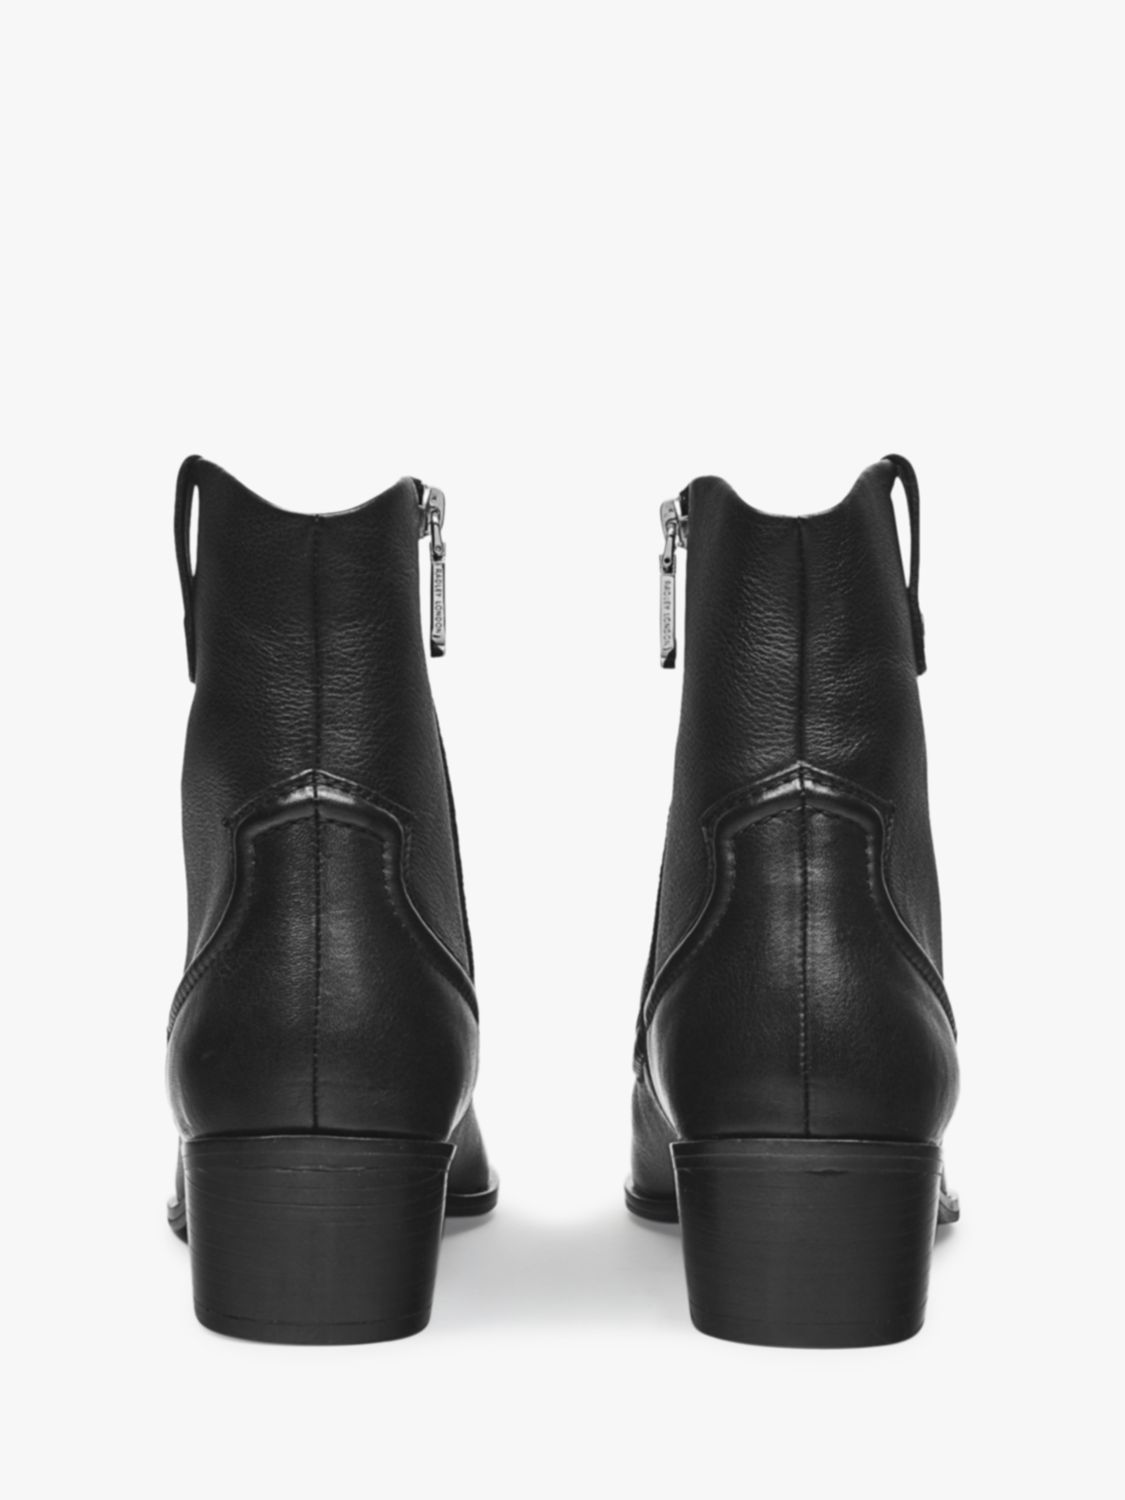 Radley Farrier Walk Westen Ankle Boots, Black, 4